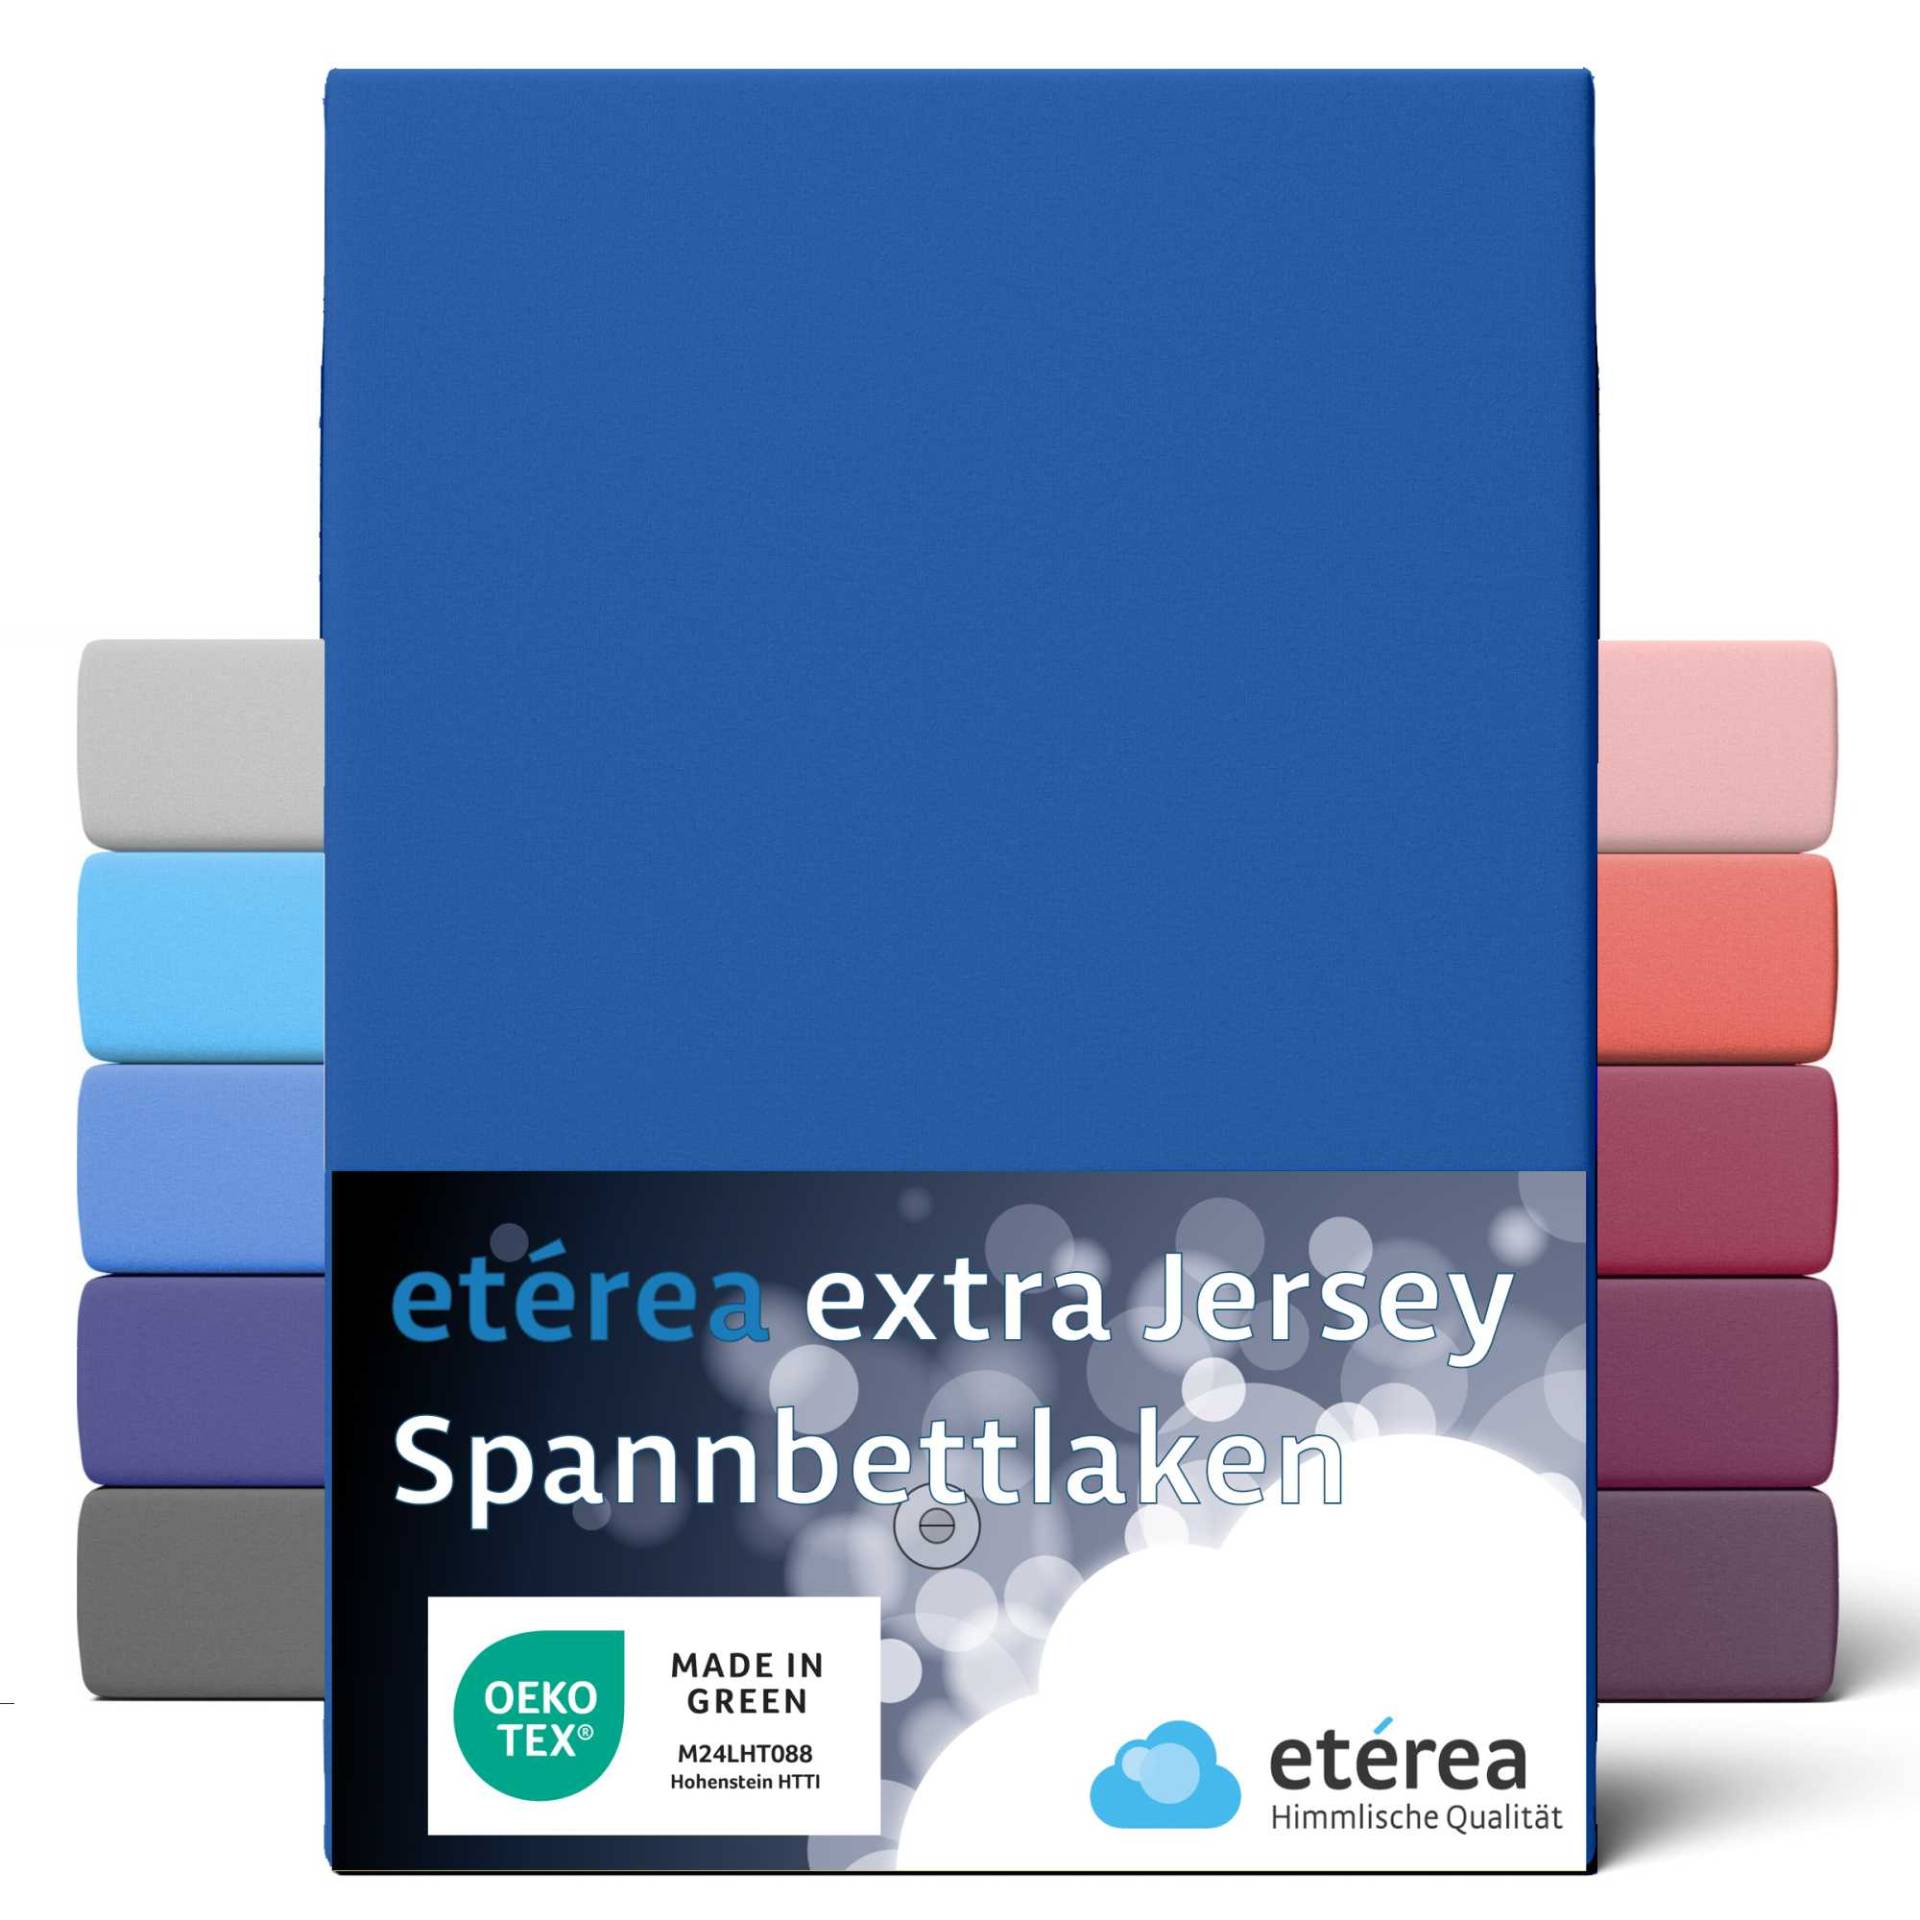 etérea Extra Jersey Spannbettlaken Blau 140x200 - 160x220 cm von etérea Himmlische Qualität